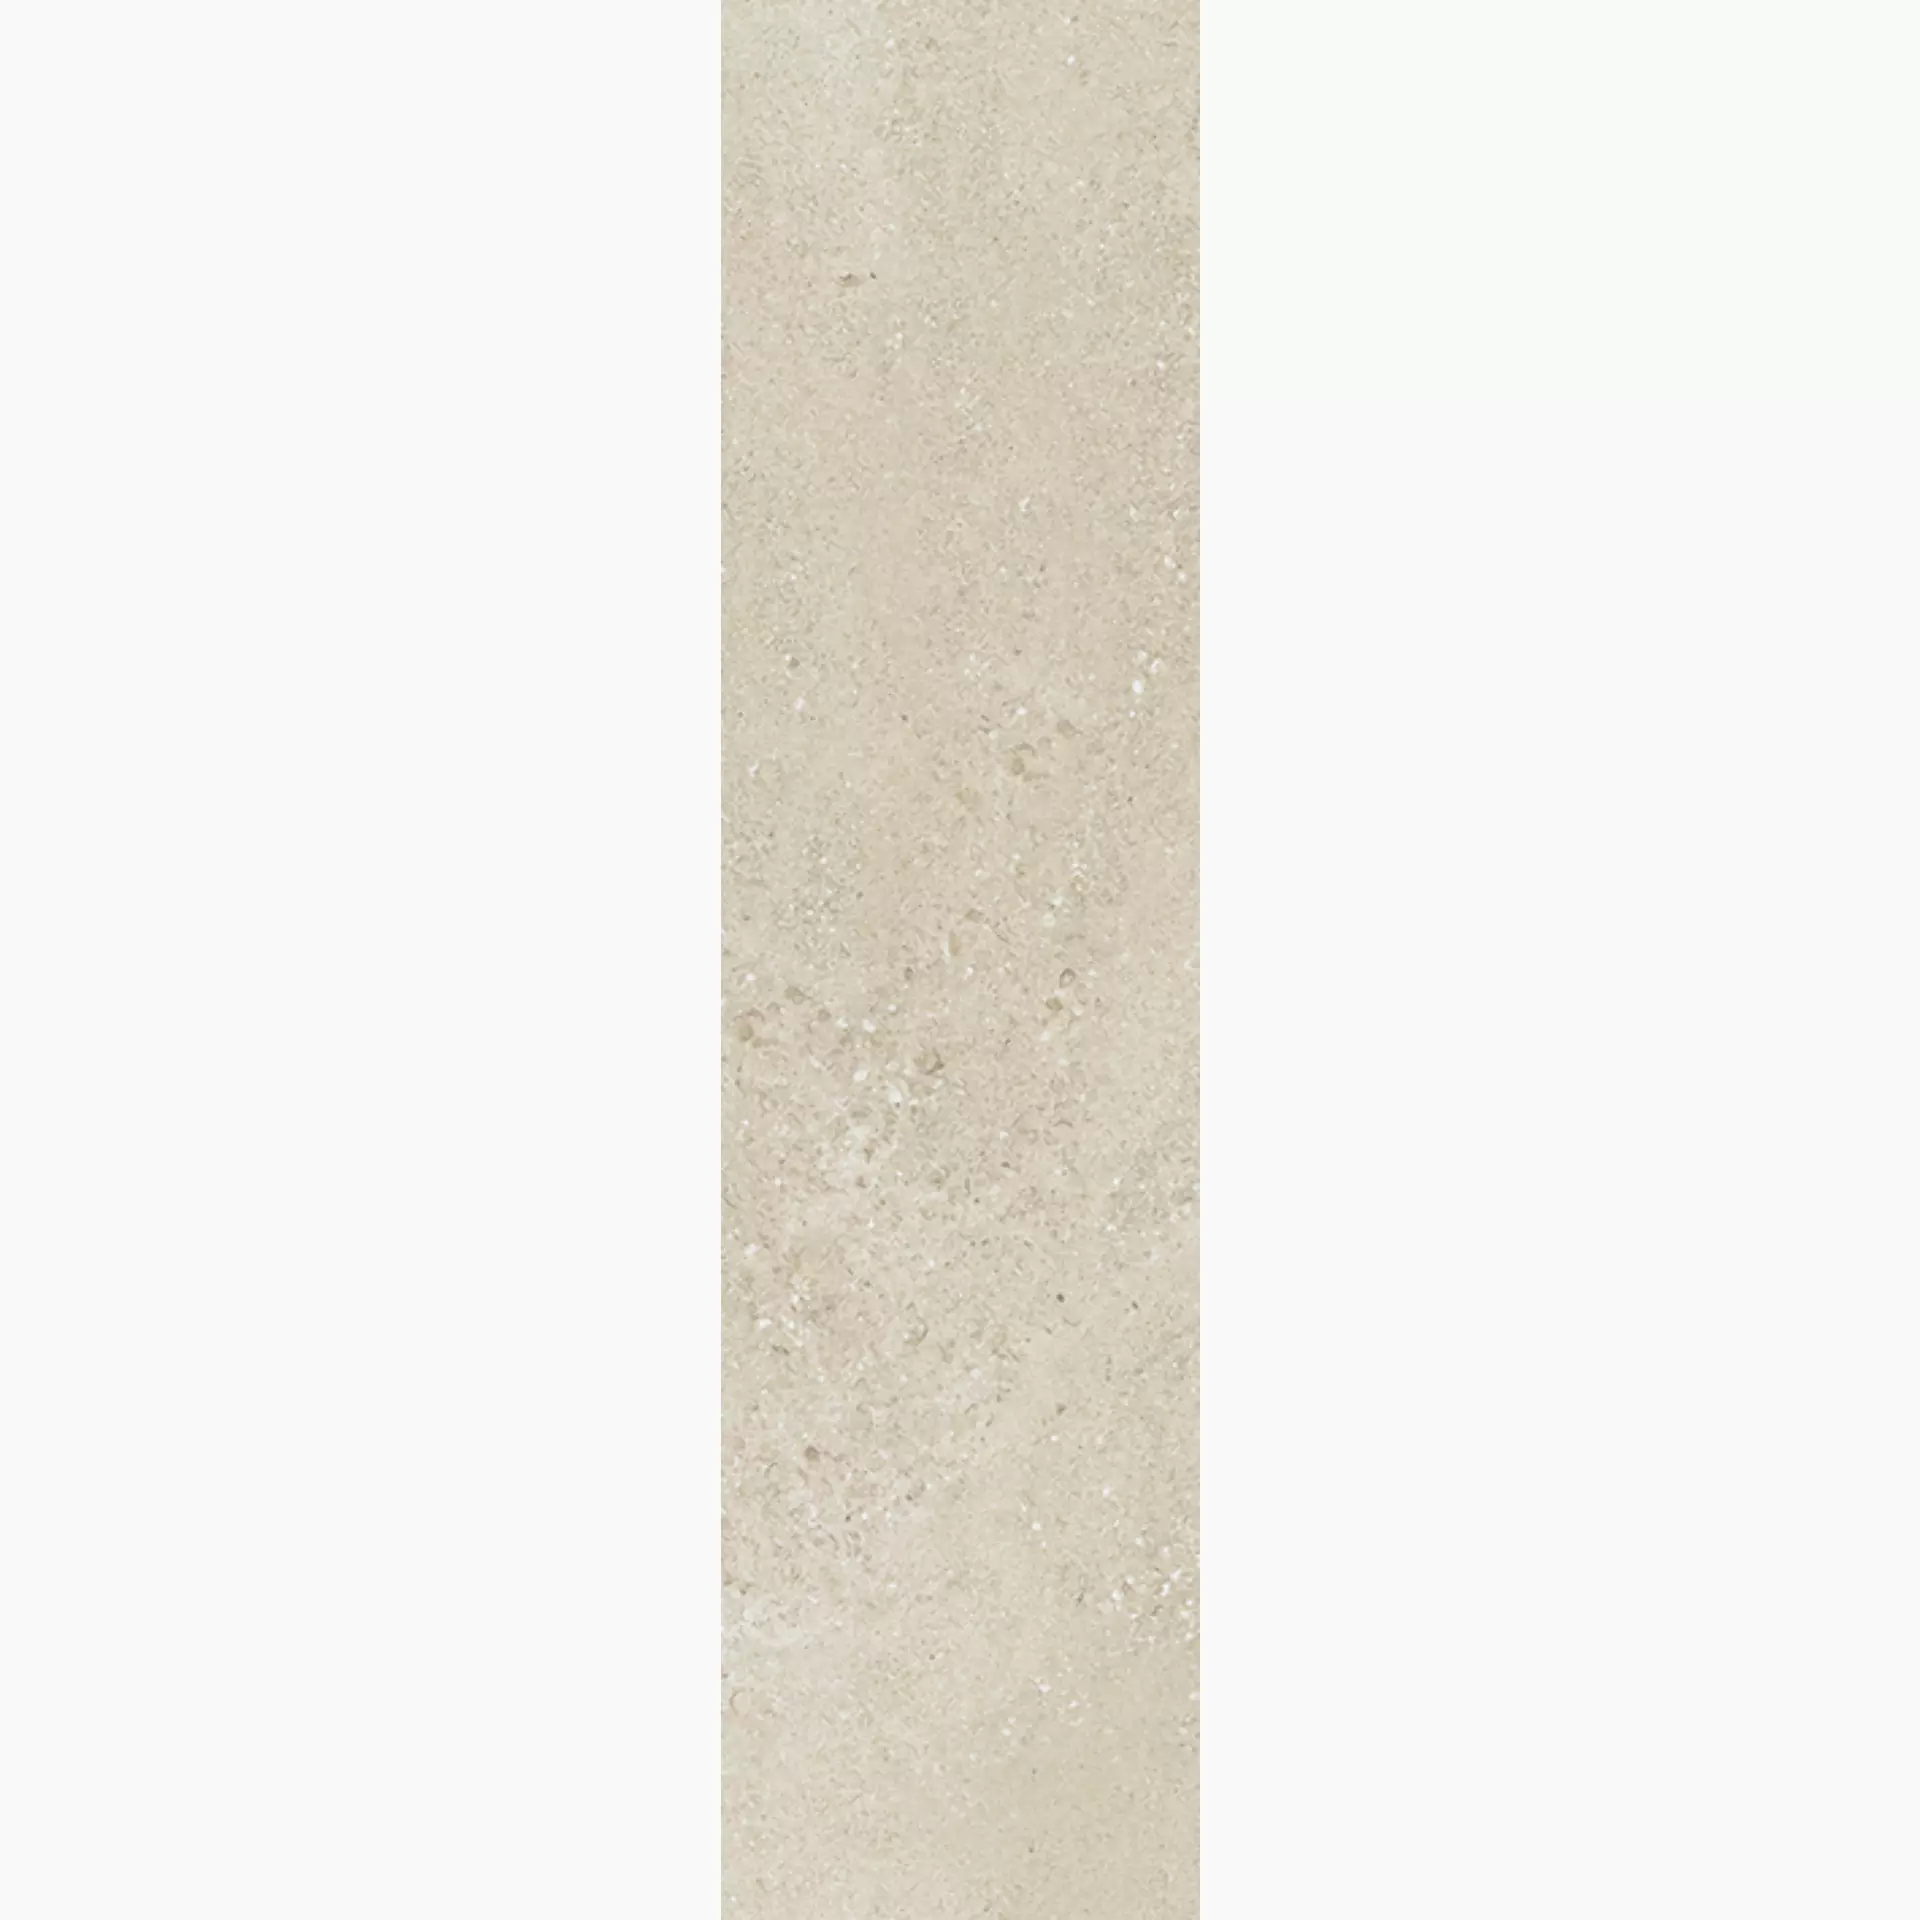 Wandfliese,Bodenfliese Villeroy & Boch Hudson Sand Brushed Sand 2419-SD2B gebuerstet 15x60cm rektifiziert 10mm